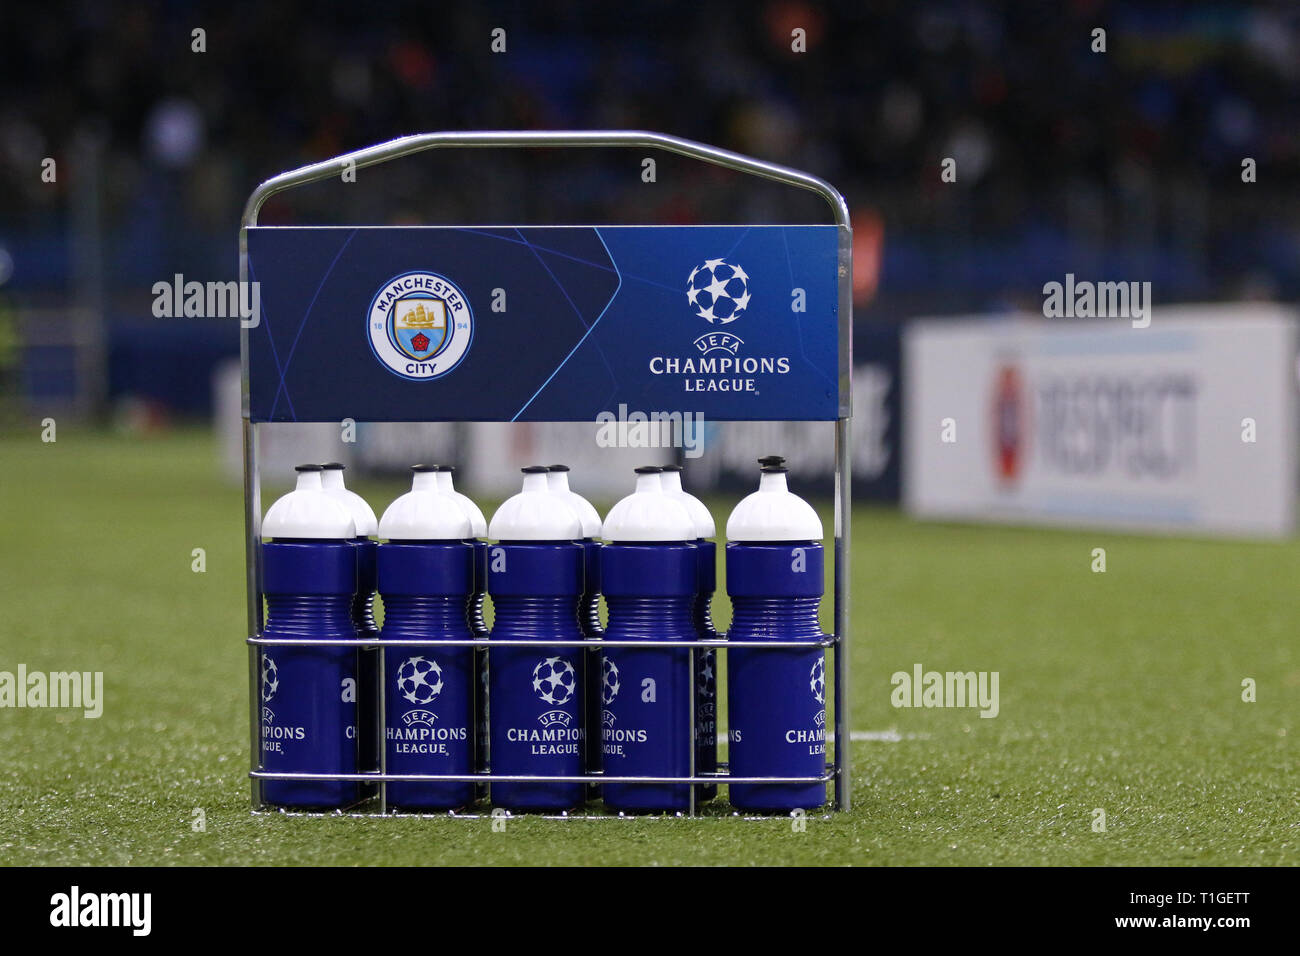 Charkow, Ukraine - Oktober 23, 2018: Bottle Carrier mit Manchester City und die UEFA Champions League Logos auf dem Gras während der UEFA Champions League Stockfoto